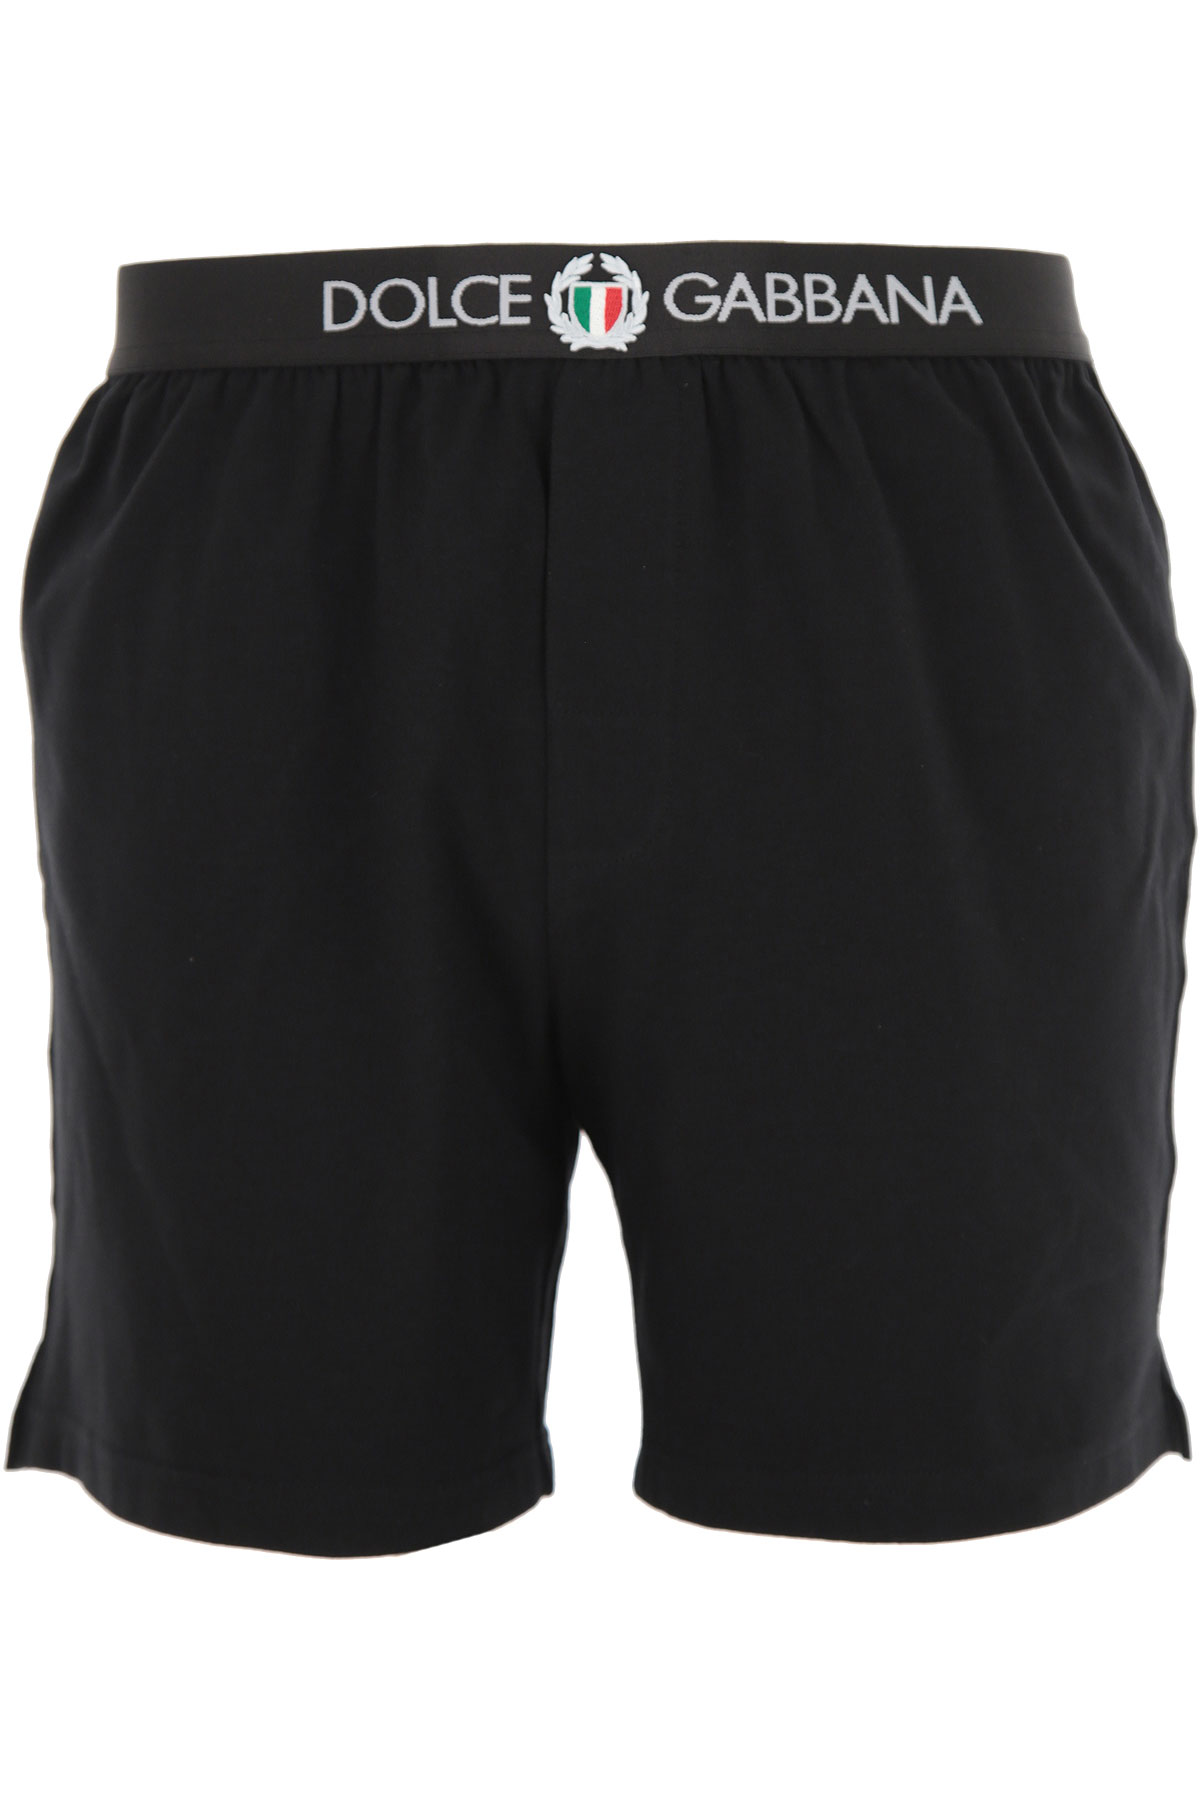 Mens Underwear Dolce & Gabbana, Style code: m4c15j-fuecg-n0000